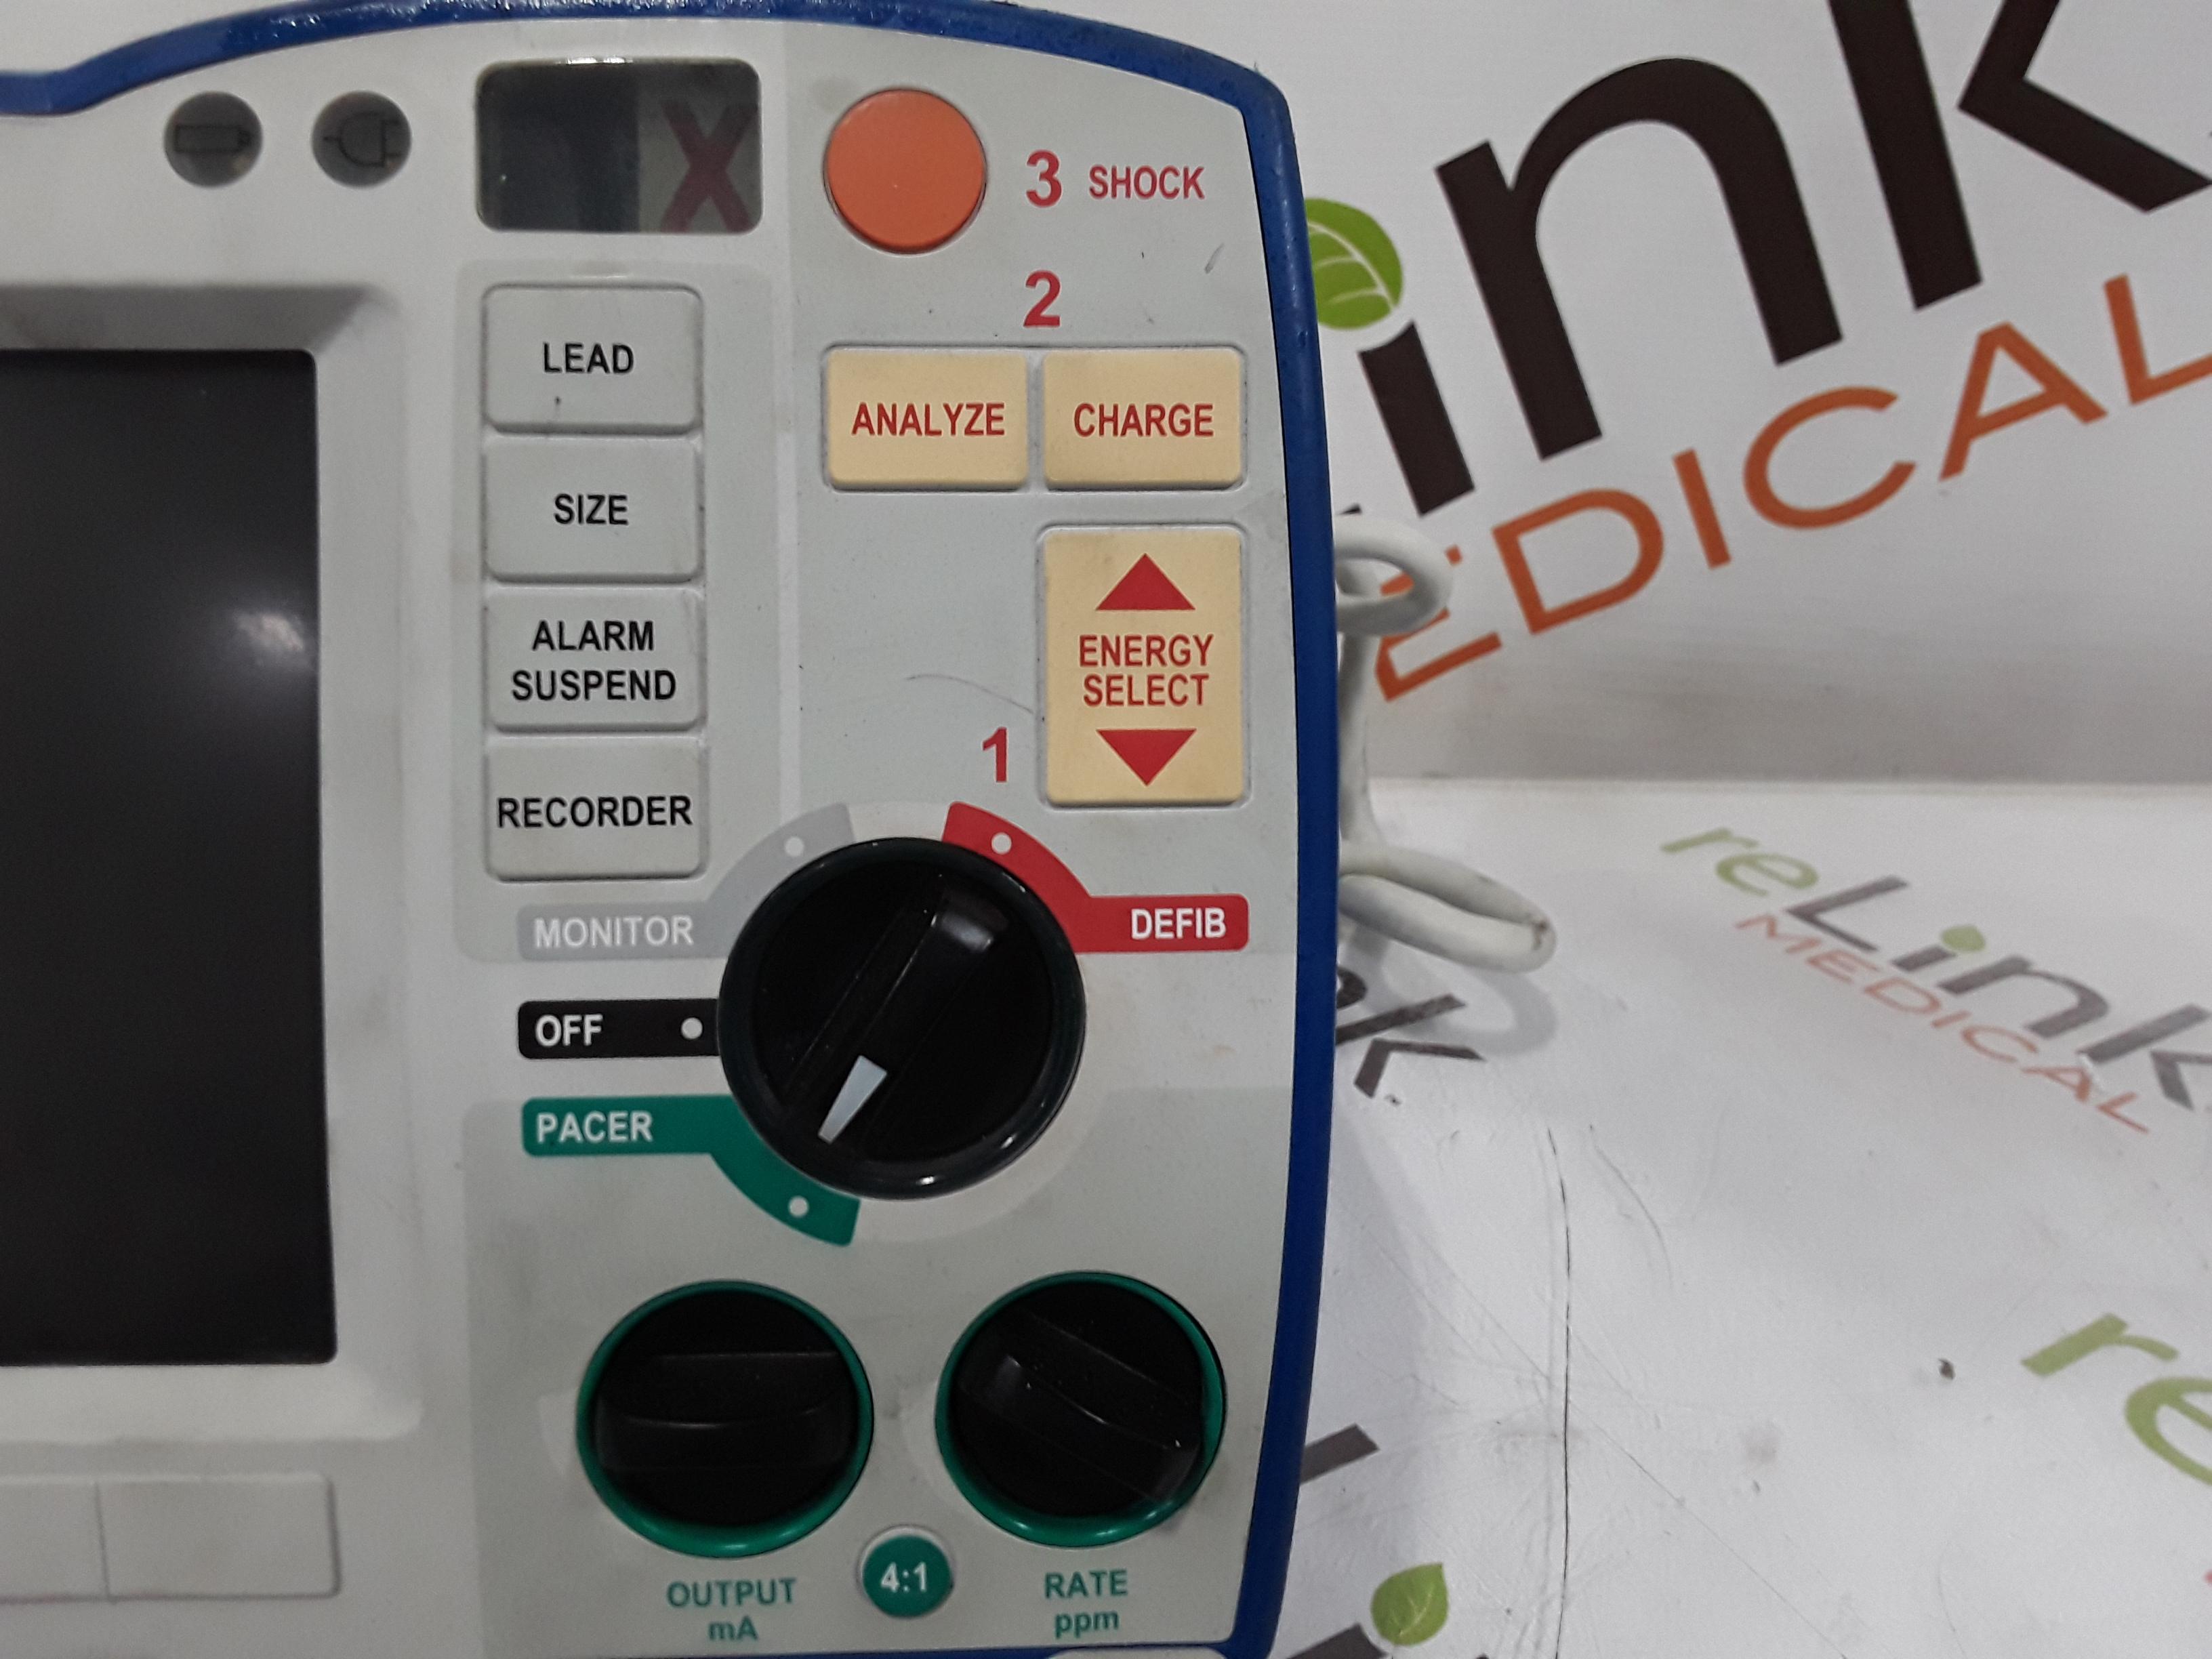 Zoll R Series ALS Defibrillator - 379125